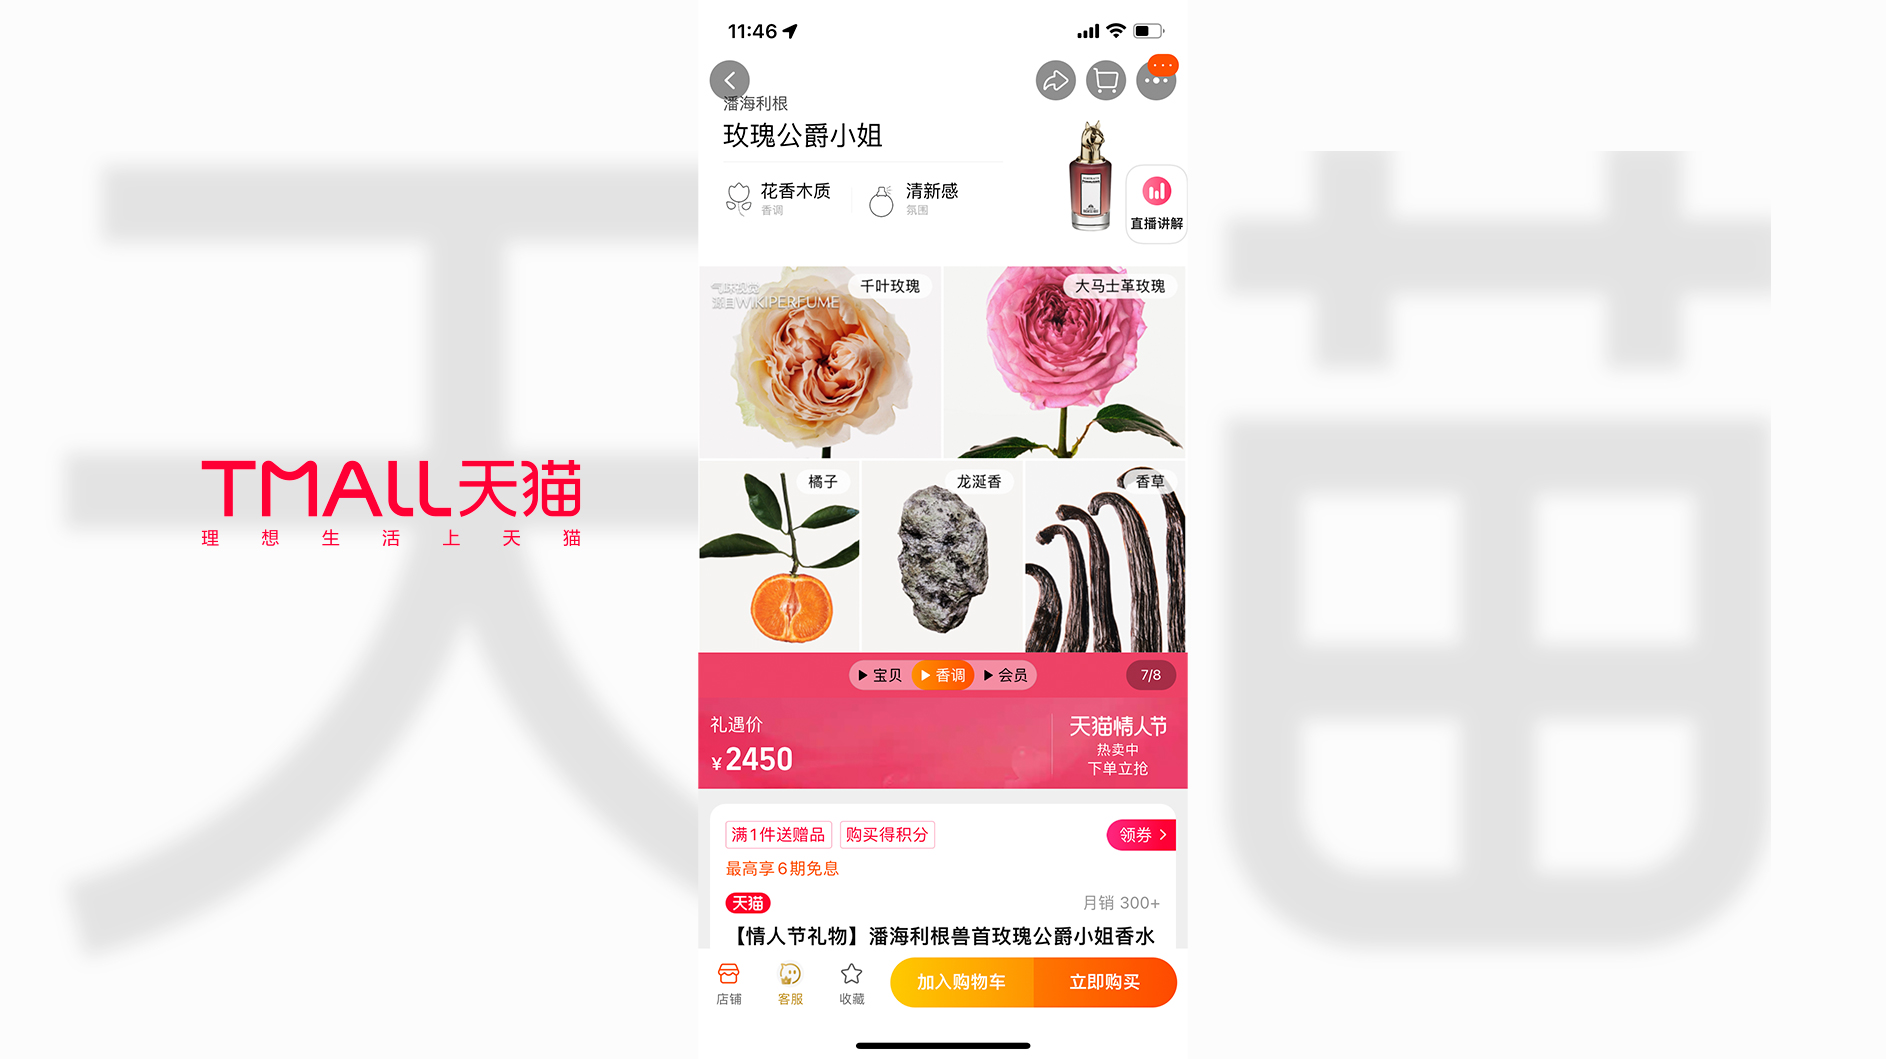 Puig se alía con Tmall para instruir a los consumidores de fragancias en China